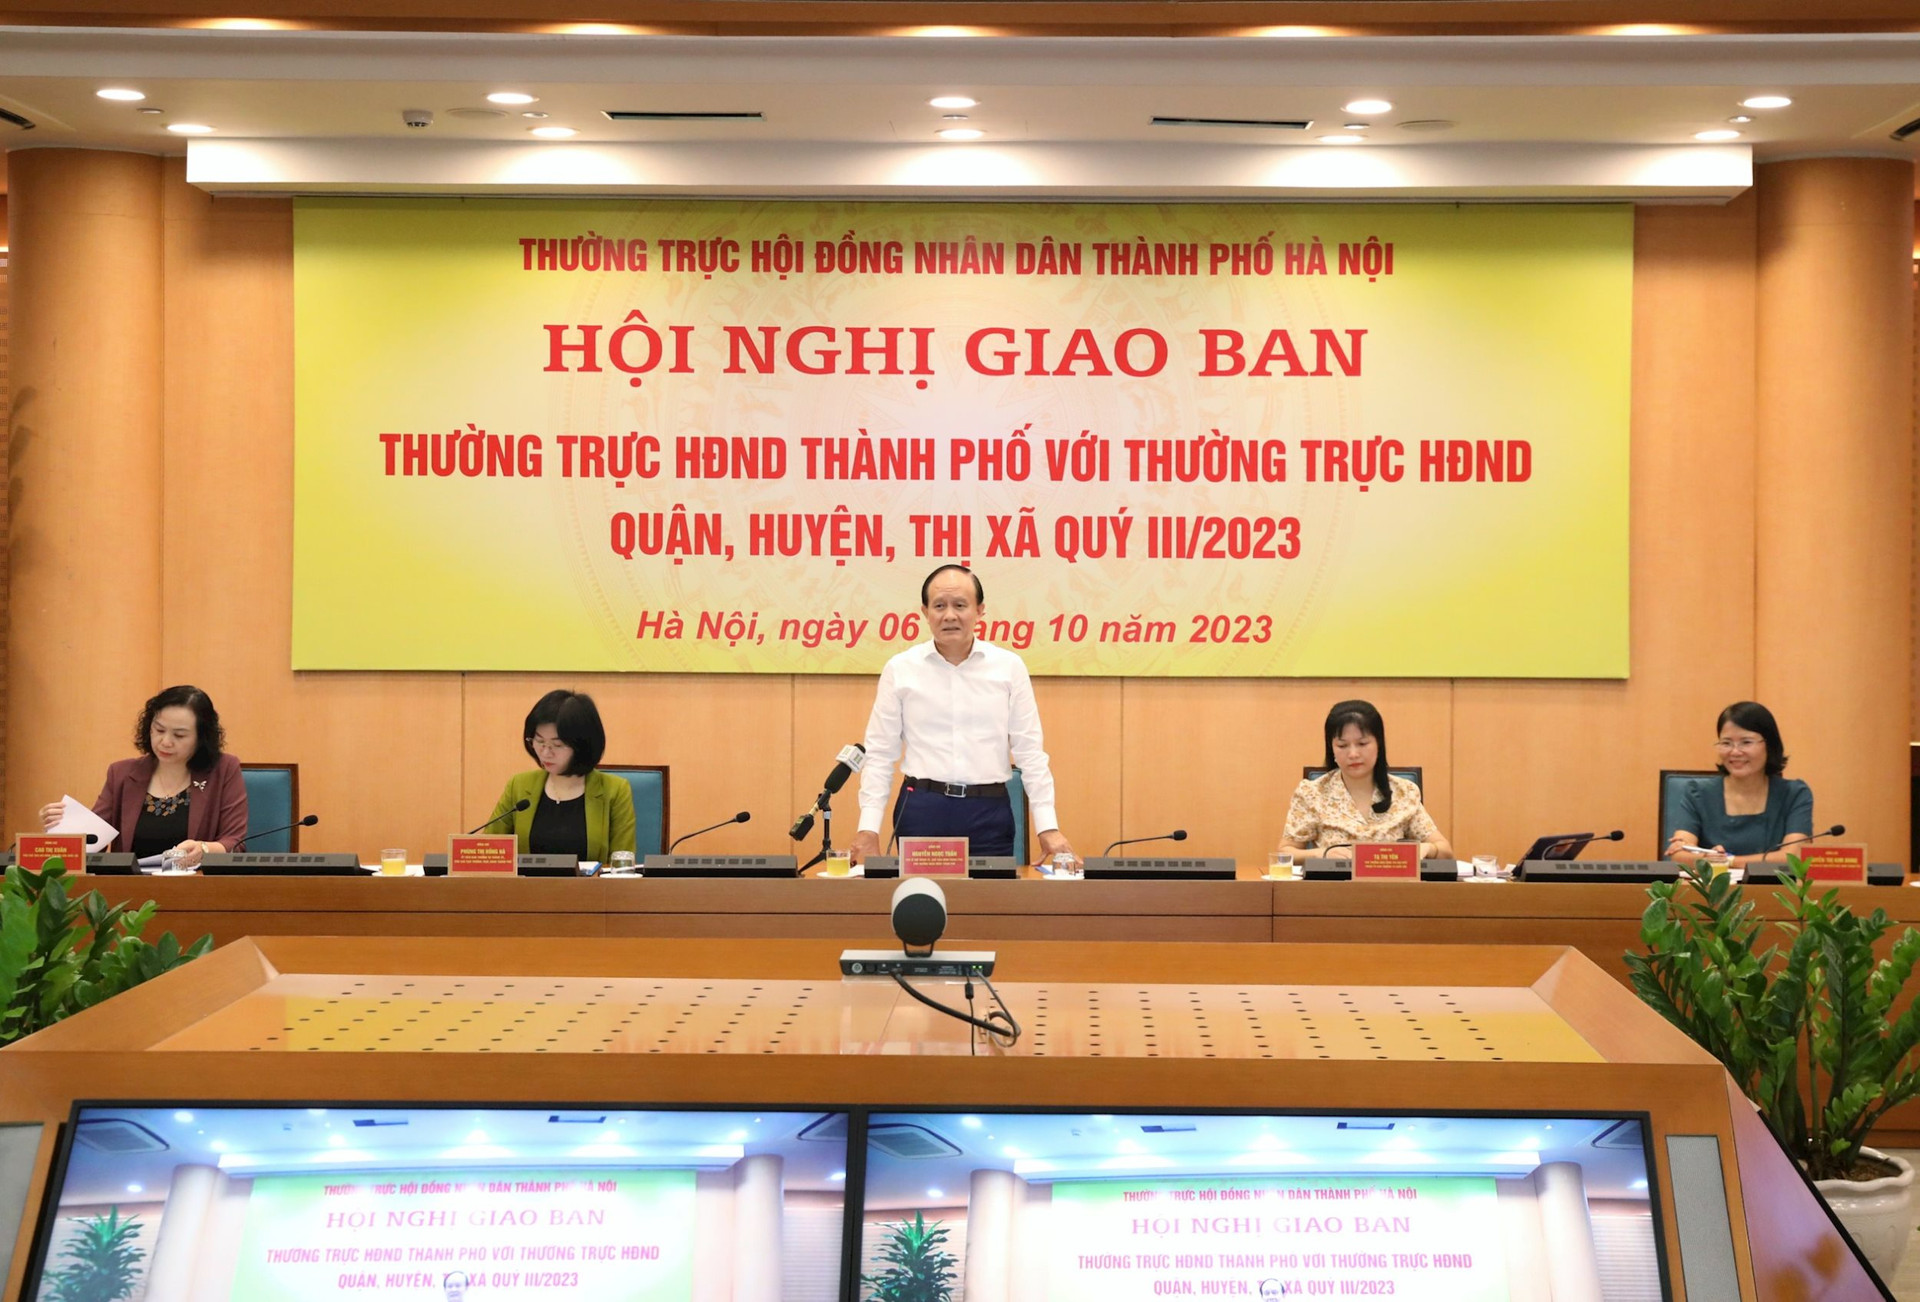 Chủ tịch HĐND Hà Nội: Đề nghị rà soát việc lấy phiếu tín nhiệm để đảm bảo quy định - Ảnh 1.